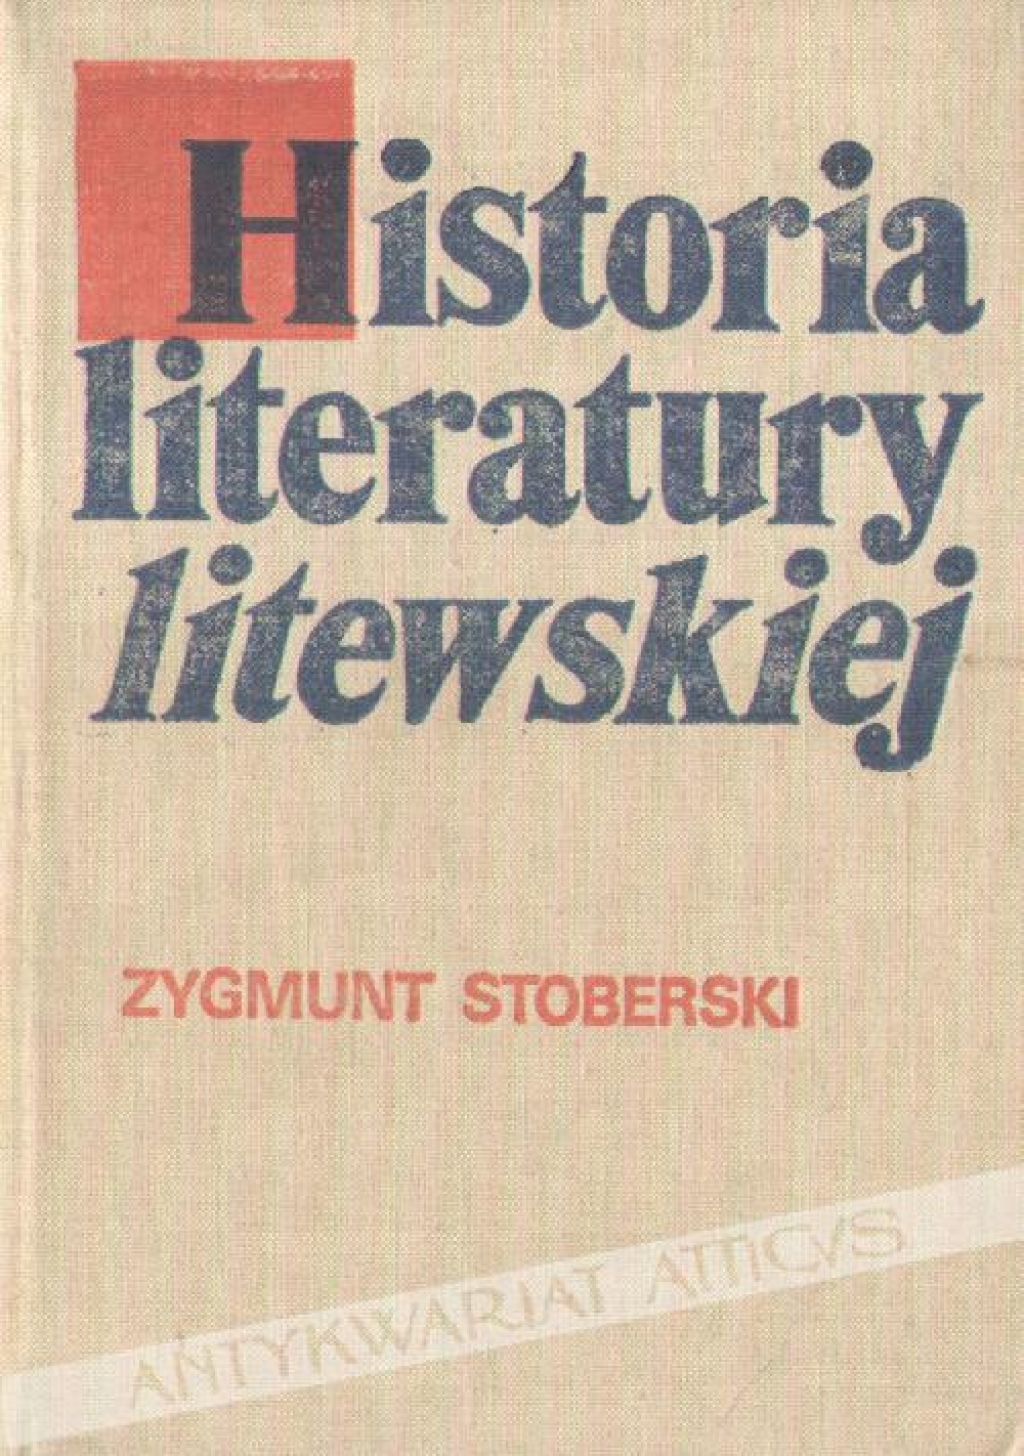 Historia literatury litewskiej. Zarys